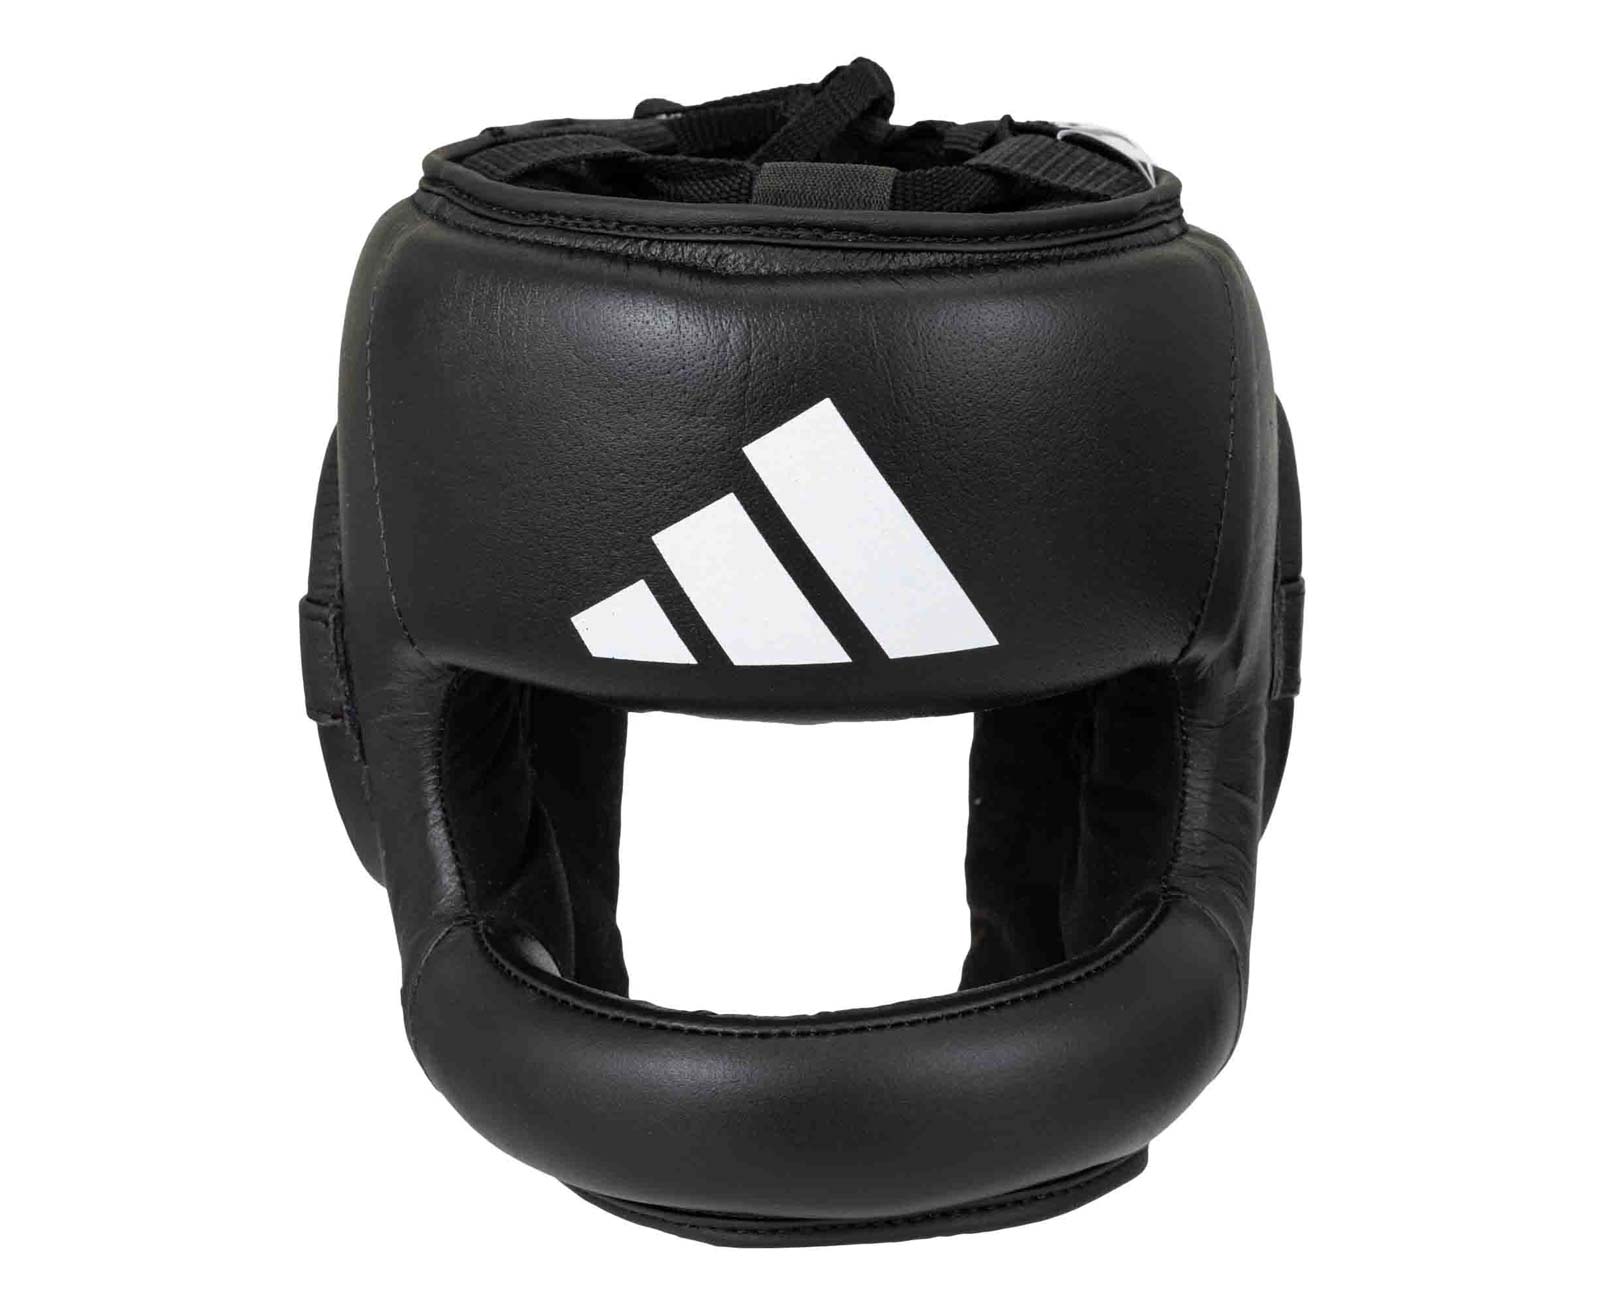 Шлем боксерский с бампером Pro Full Protection Boxing Headgear черный